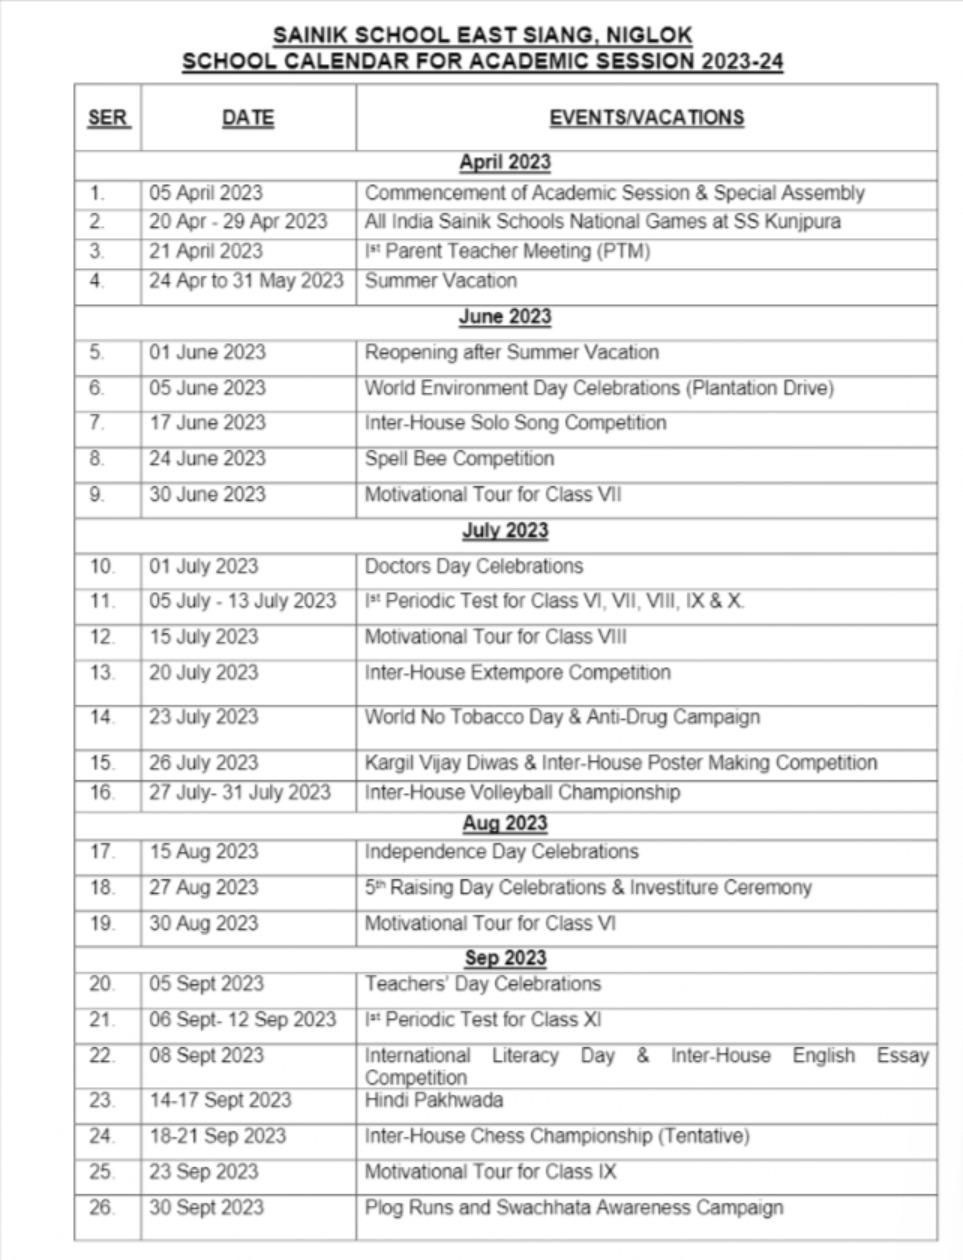 Sainik School Holiday List 2023-24